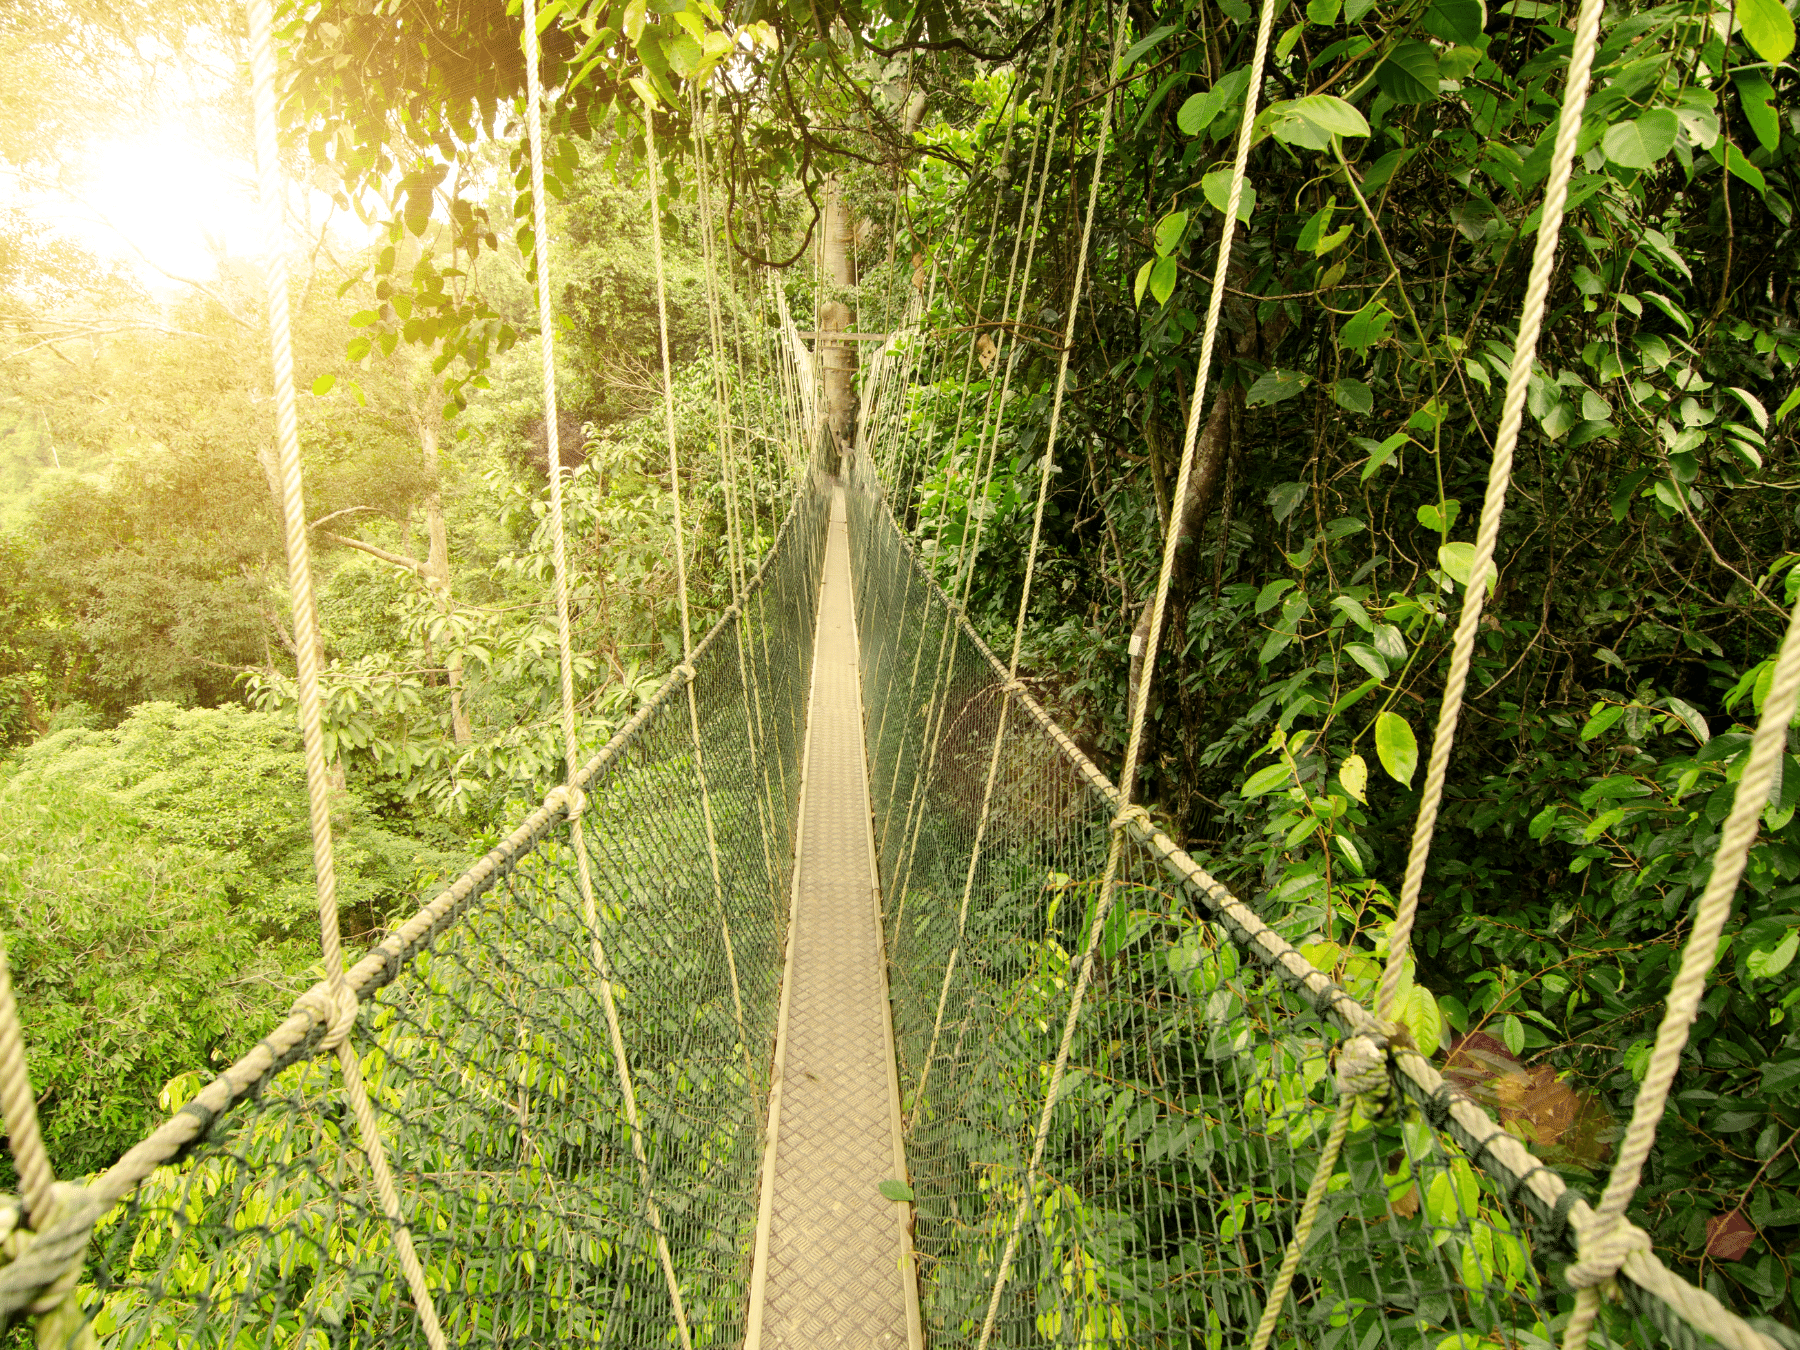 Canopy bridge in Taman Negara, Malaysia